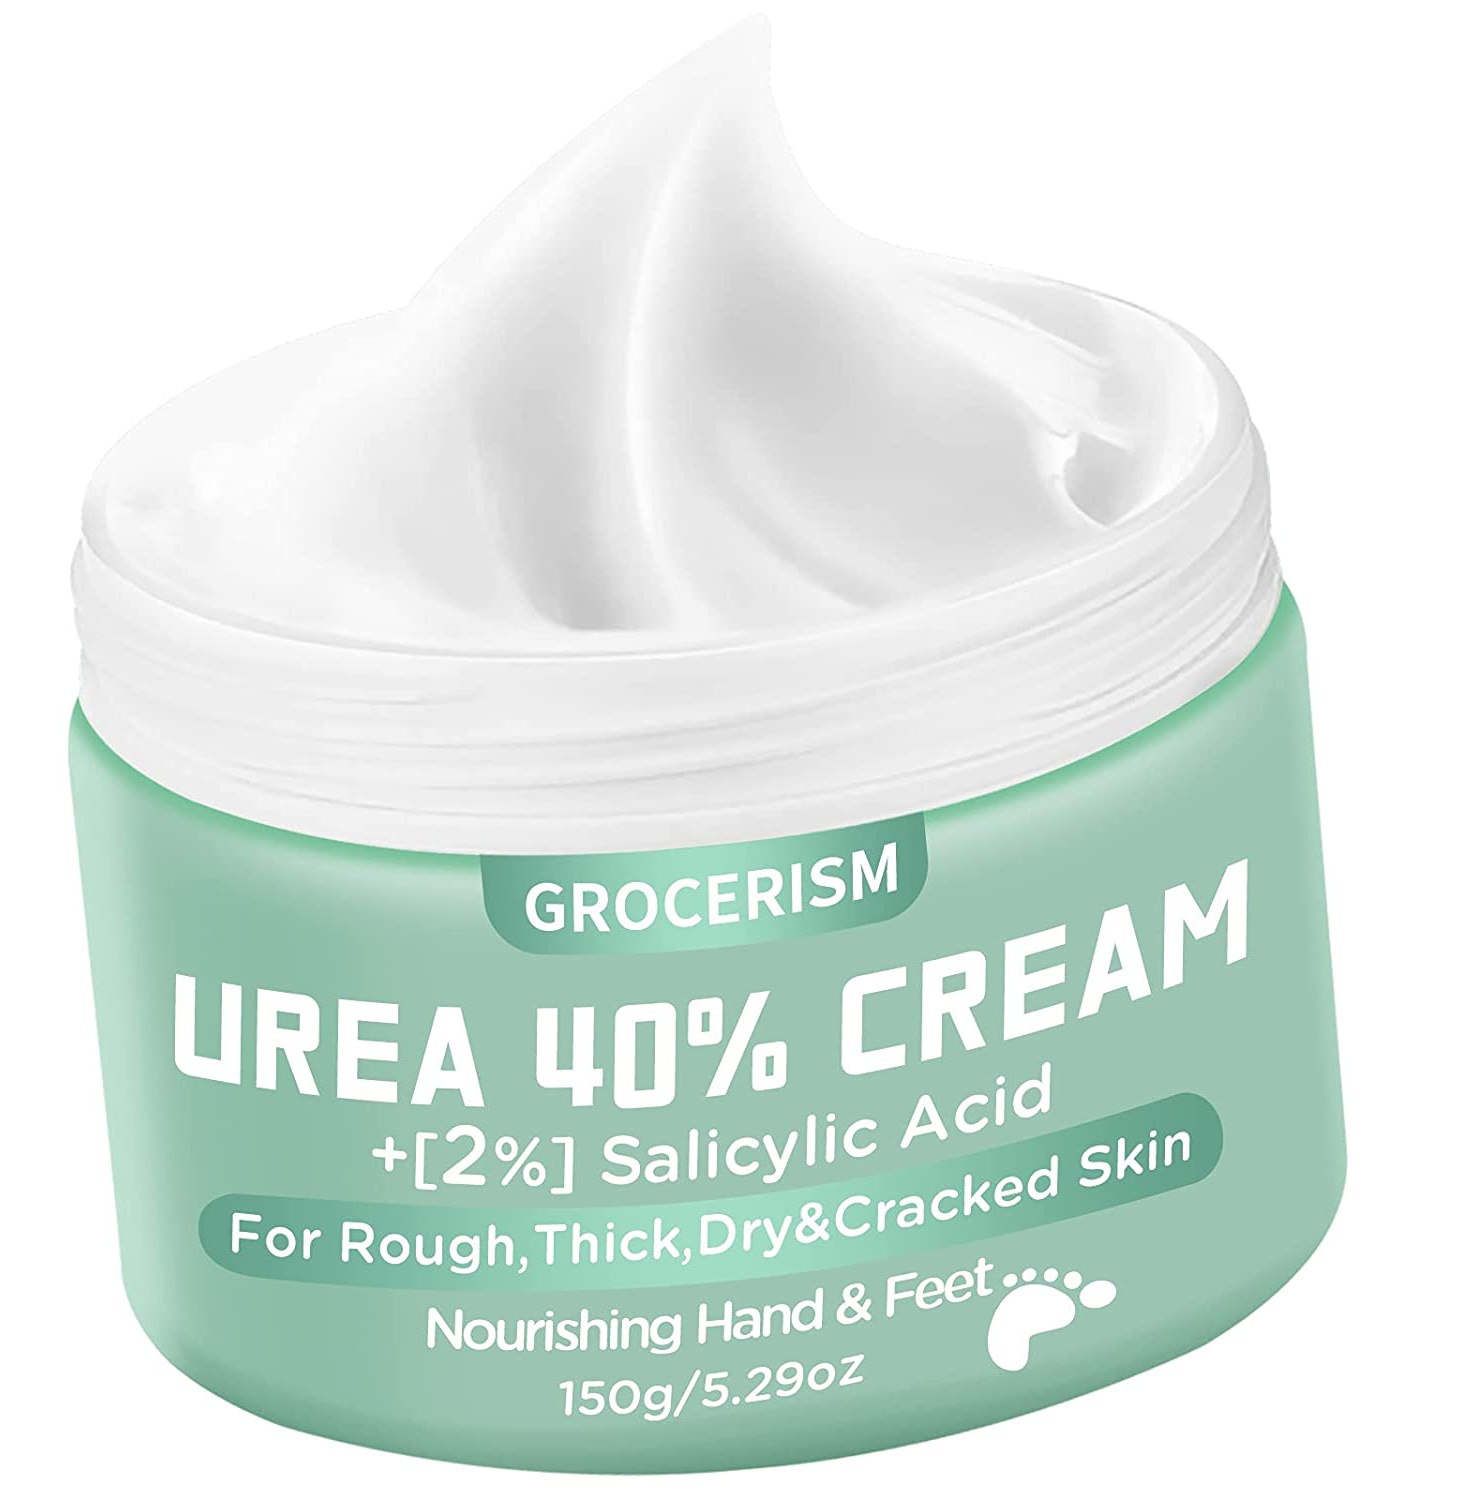 Grocerism Urea 40% Cream + 2% Salicylic Acid